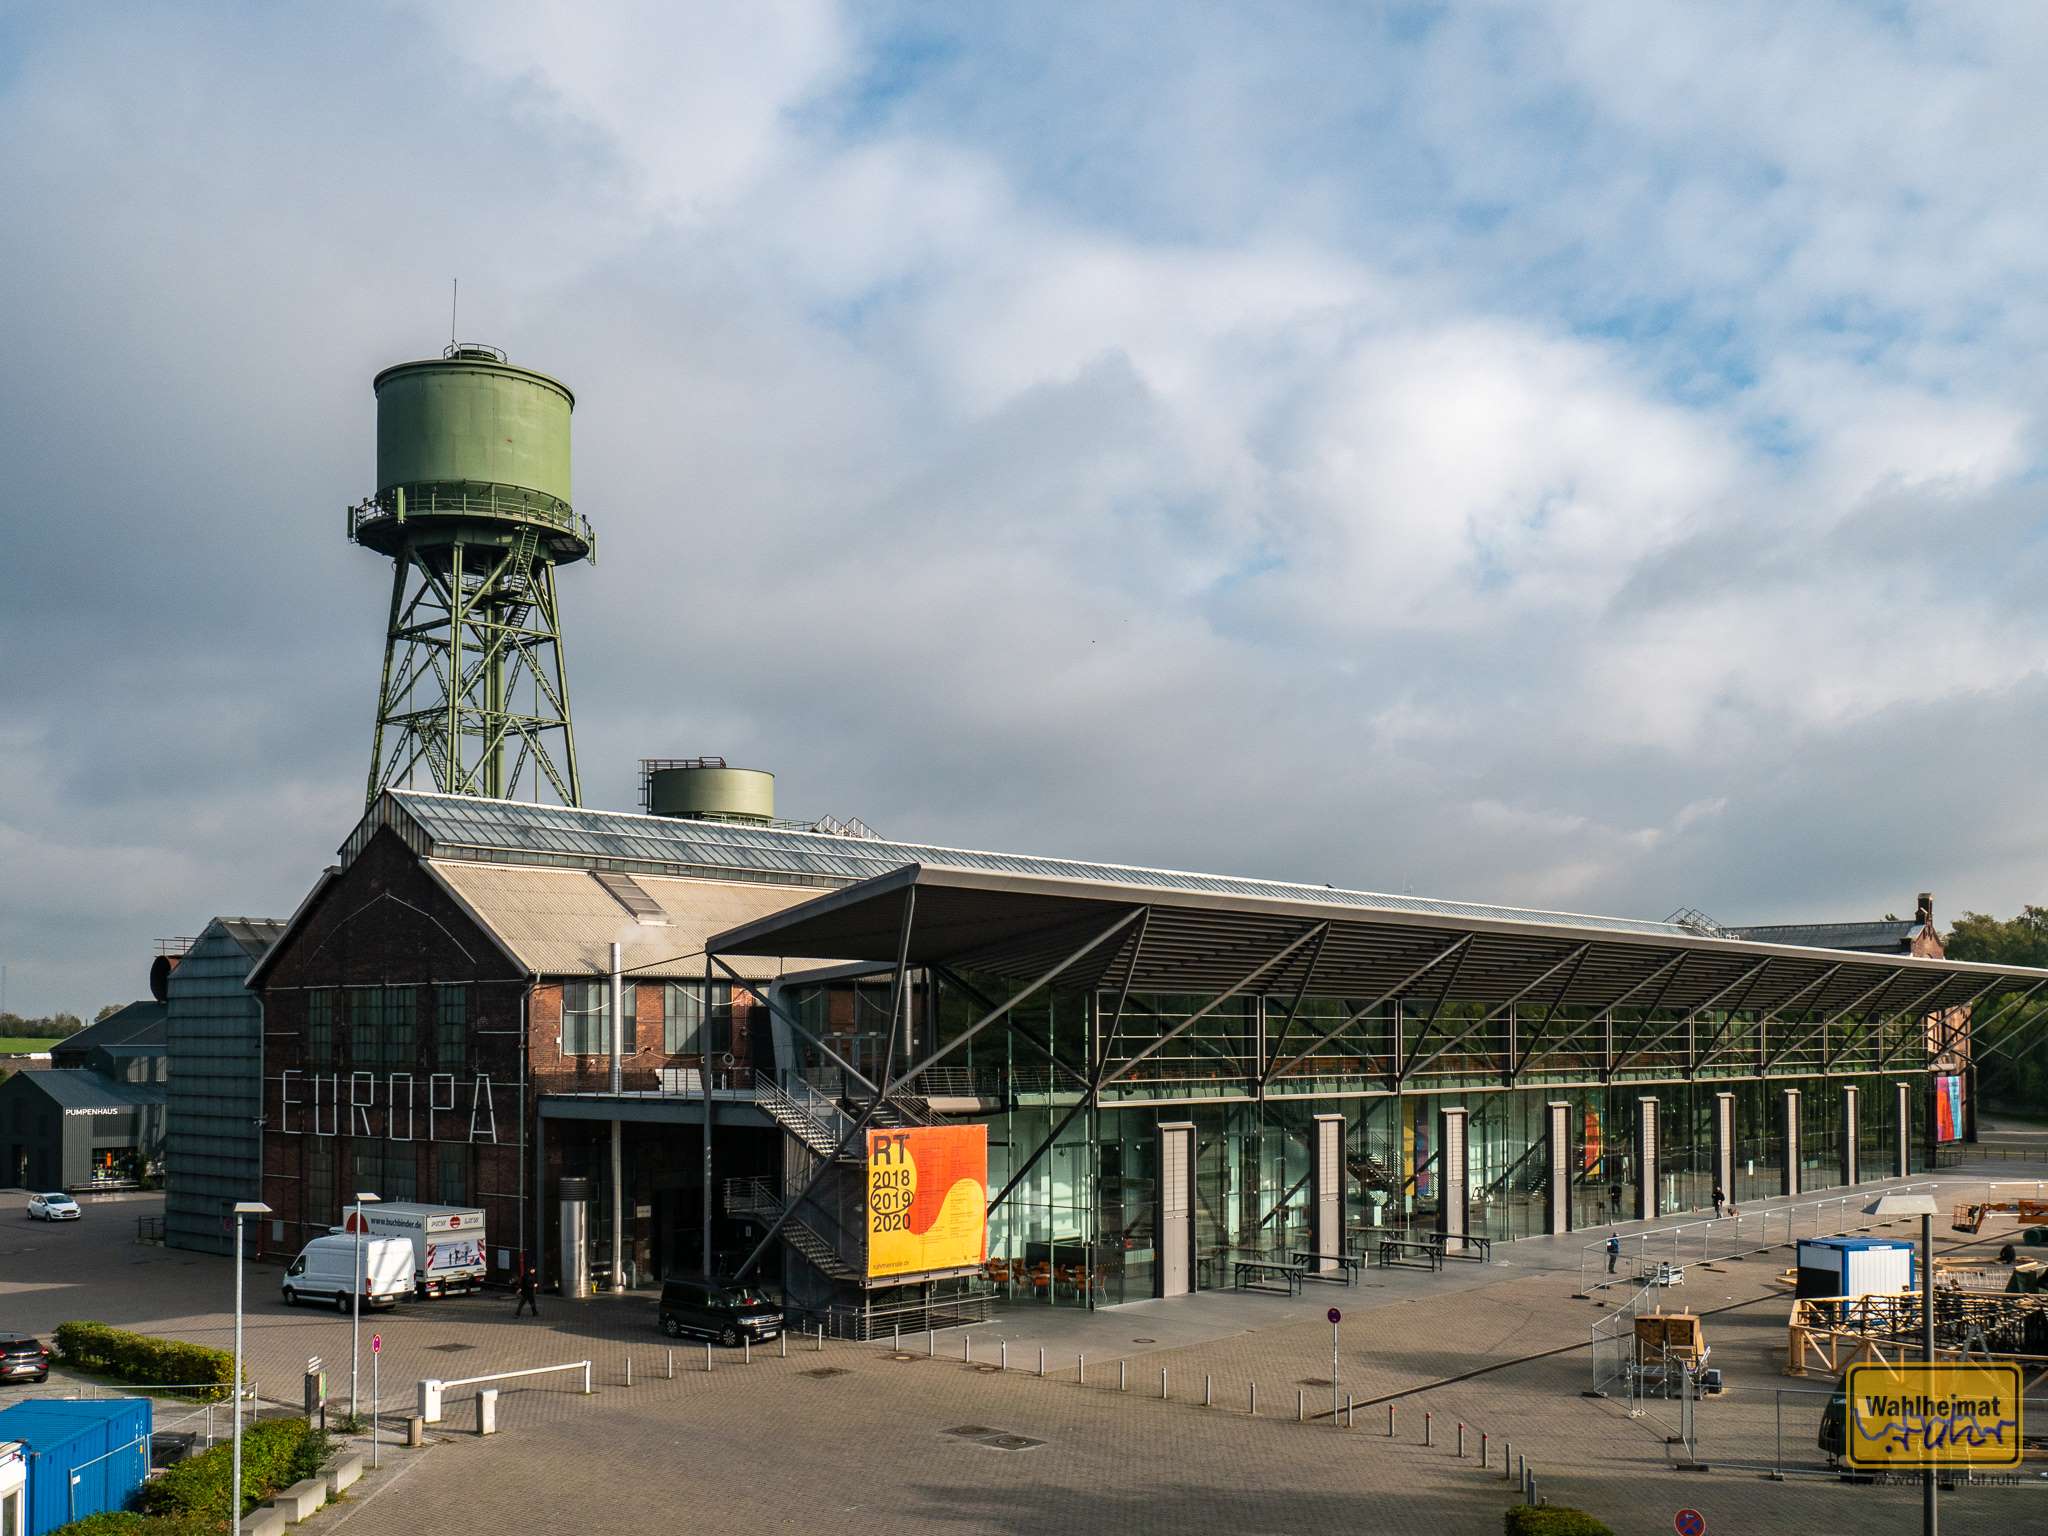 Die Jahrhunderthalle in Bochum ist mittlerweile ein etablierter Ort für Kultur, Events und Kunst. So finden hier nicht nur beispielsweise seit 2010 die Urbanatix-Vorstellungen statt, sondern die Ruhrtriiienale hat hier ebenfalls einen Schwerpunkt (hier werden gerade die Reste 2019 verräumt).